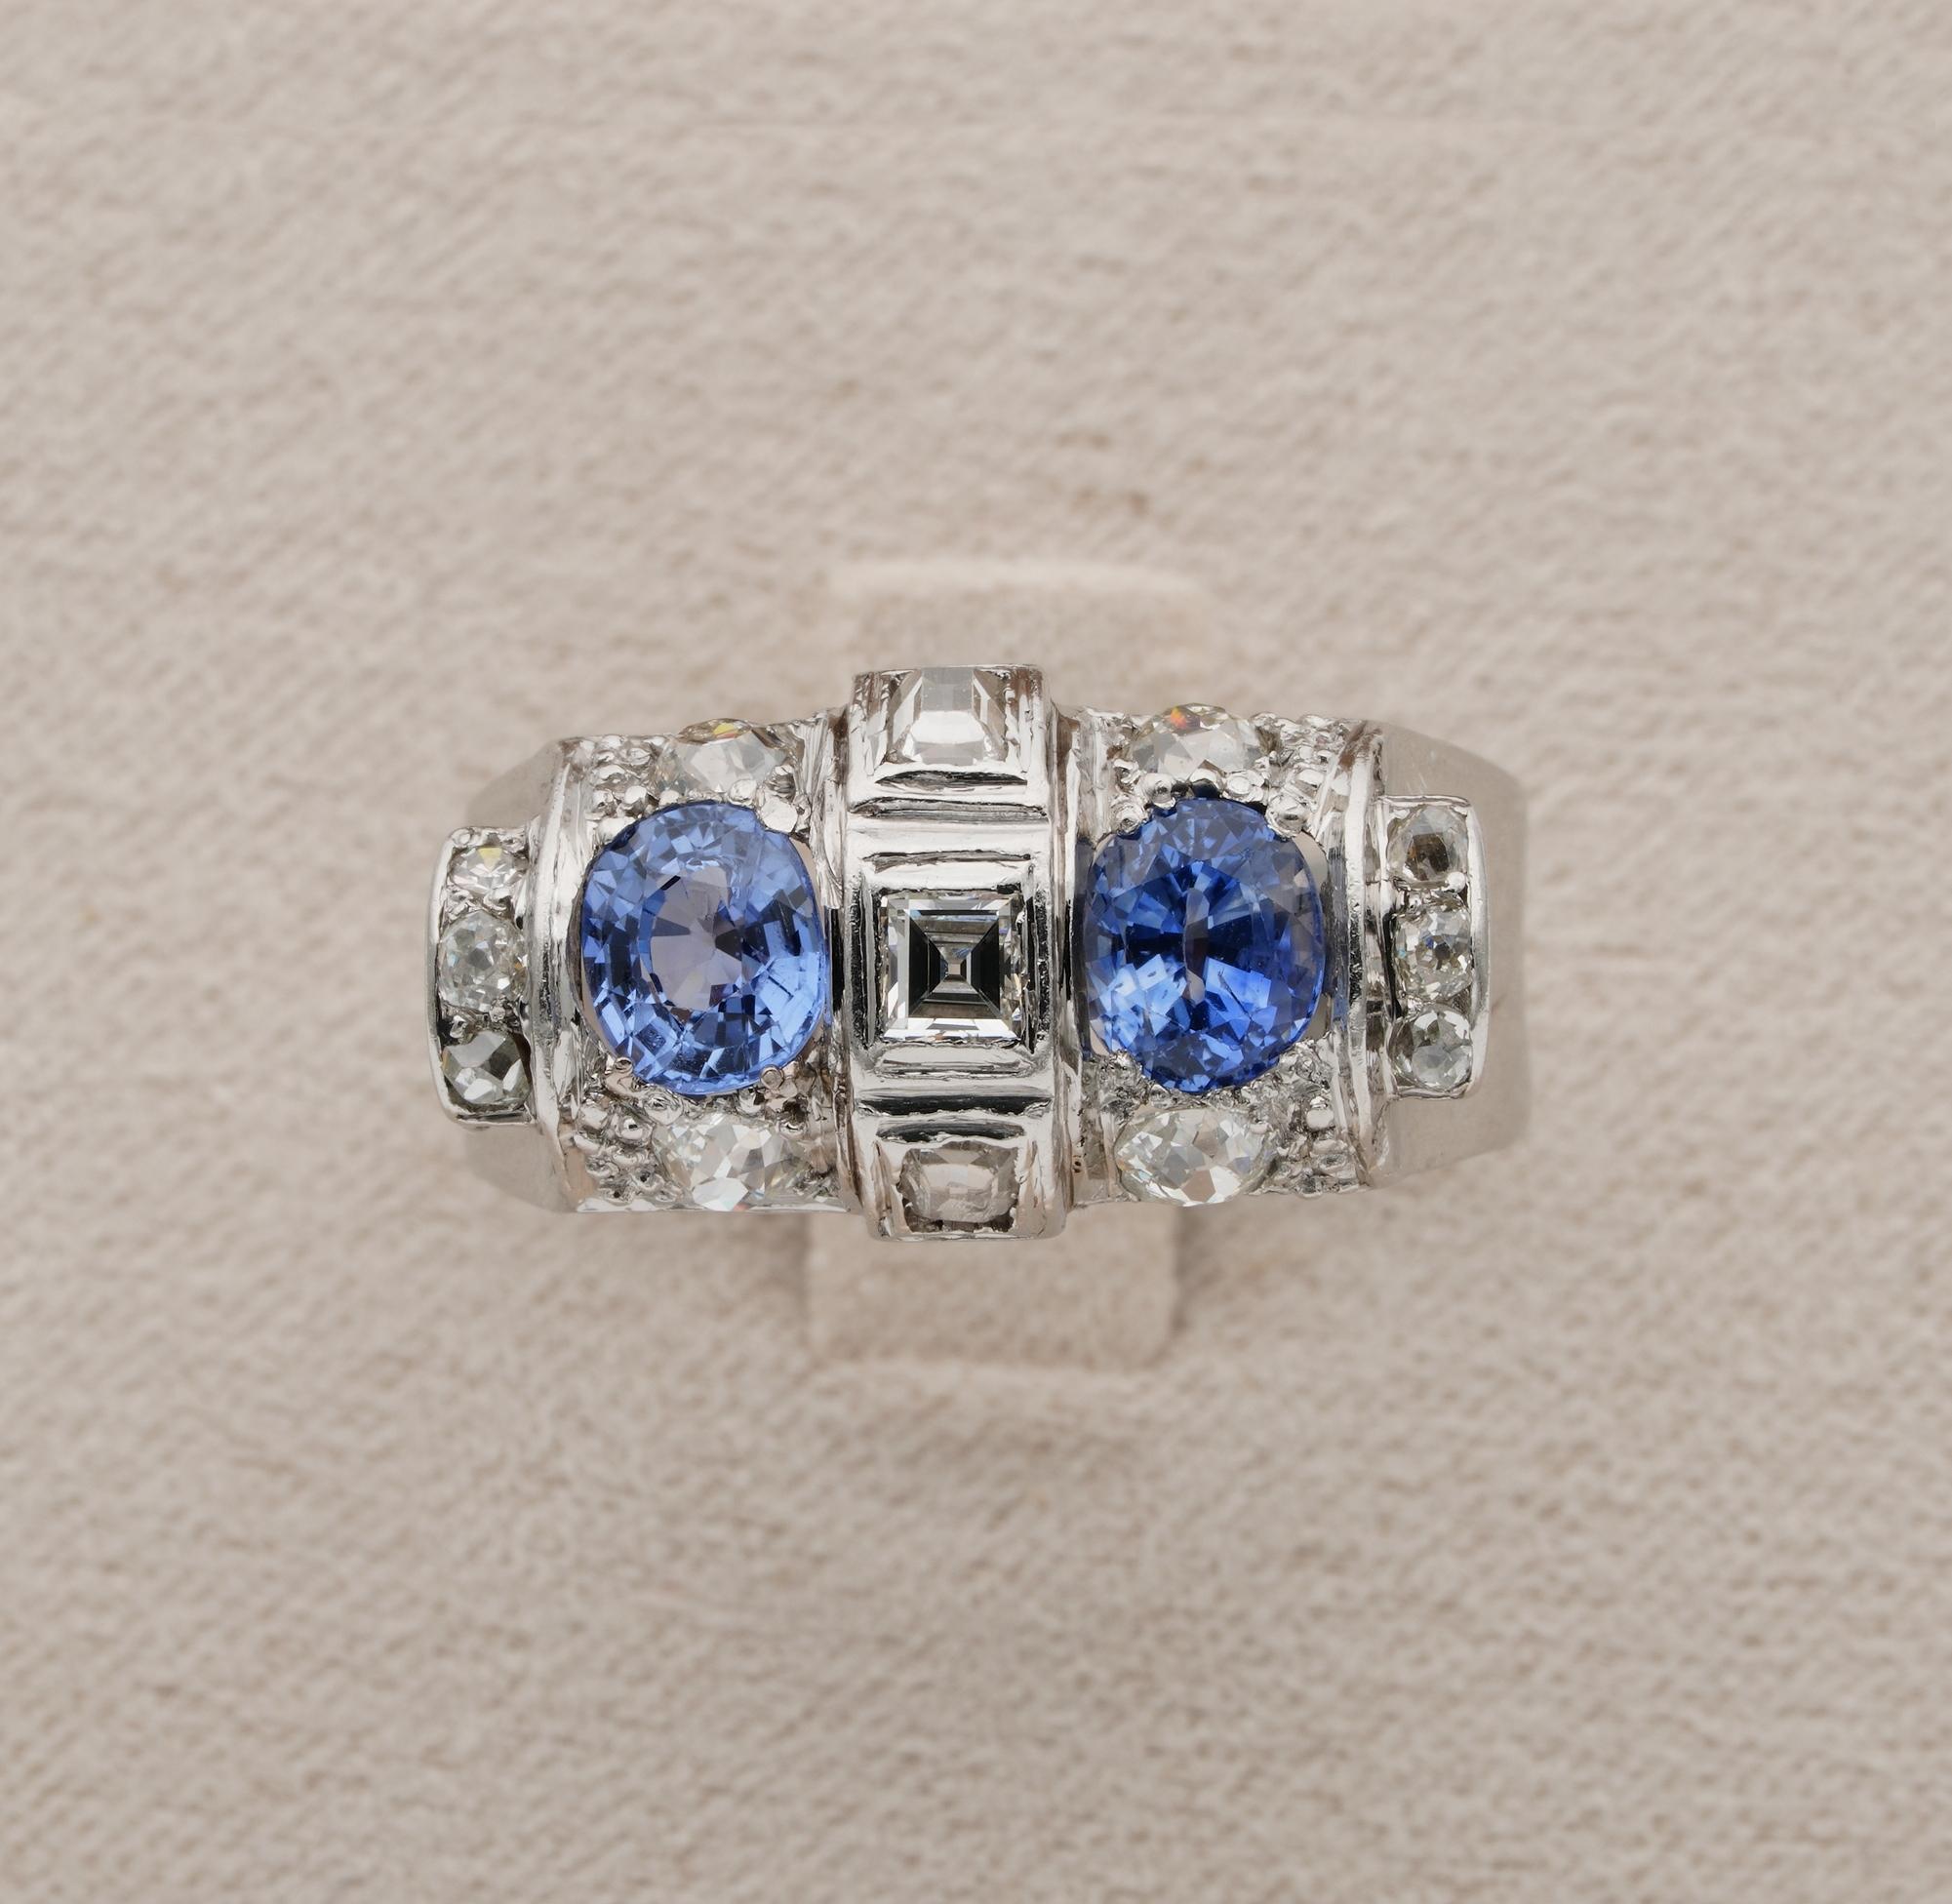 Dieser fabelhafte antike Ring ist aus der Art déco Periode, 1925 ca.
Geometrisches, kunstvolles Design der Epoche, strukturiert durch ein Spiel von Diamanten und Saphiren
Der Ring ist aus Platin handgefertigt, markiert
Ceylon Herkunft Saphire ca.